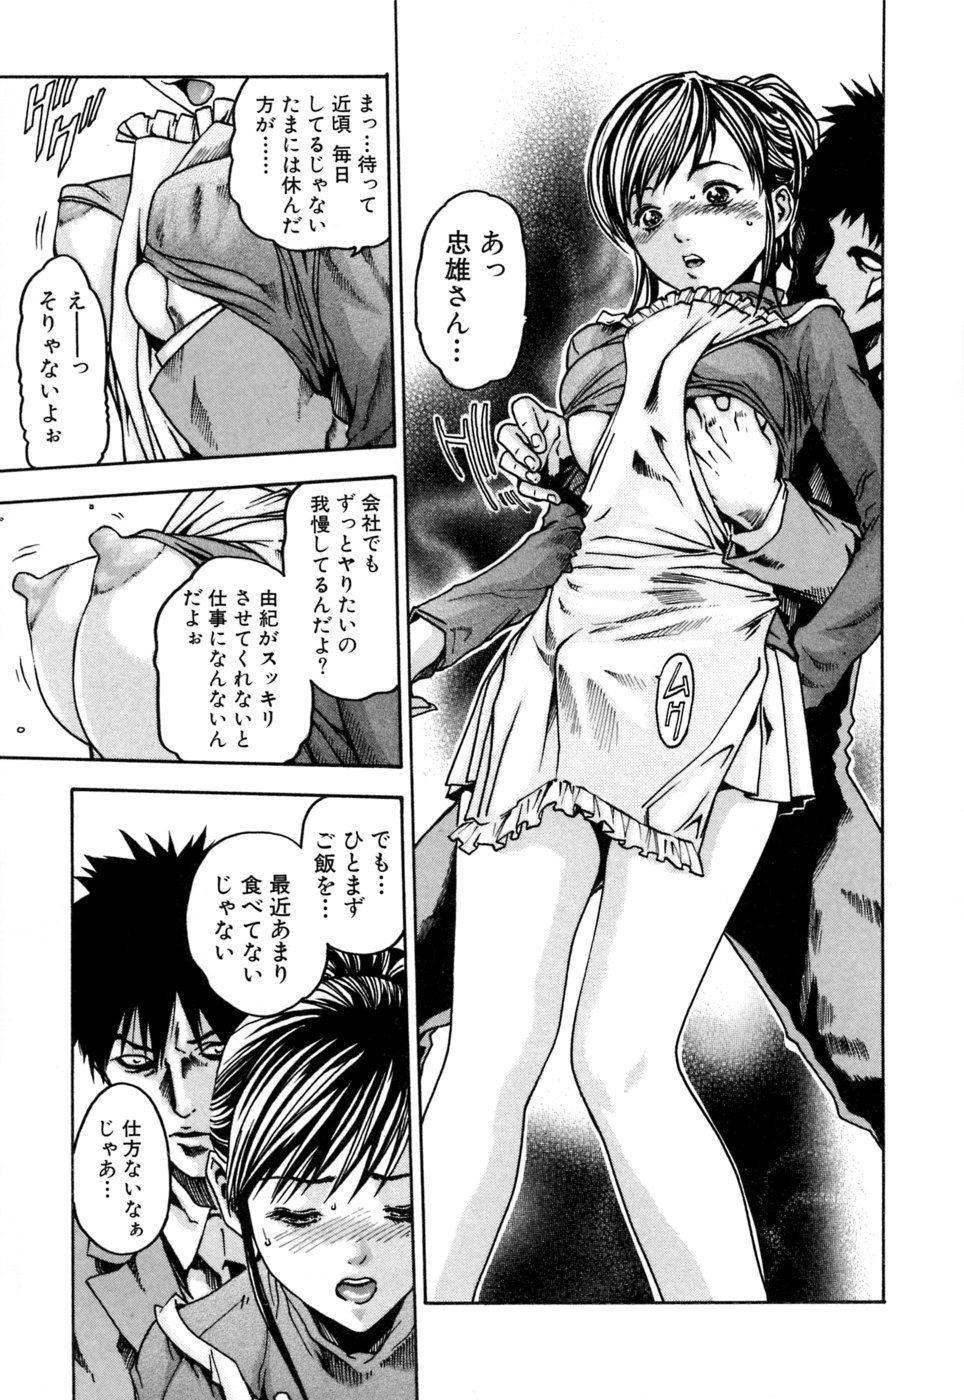 [Haruki] Kisei Juui Suzune 1 page 39 full